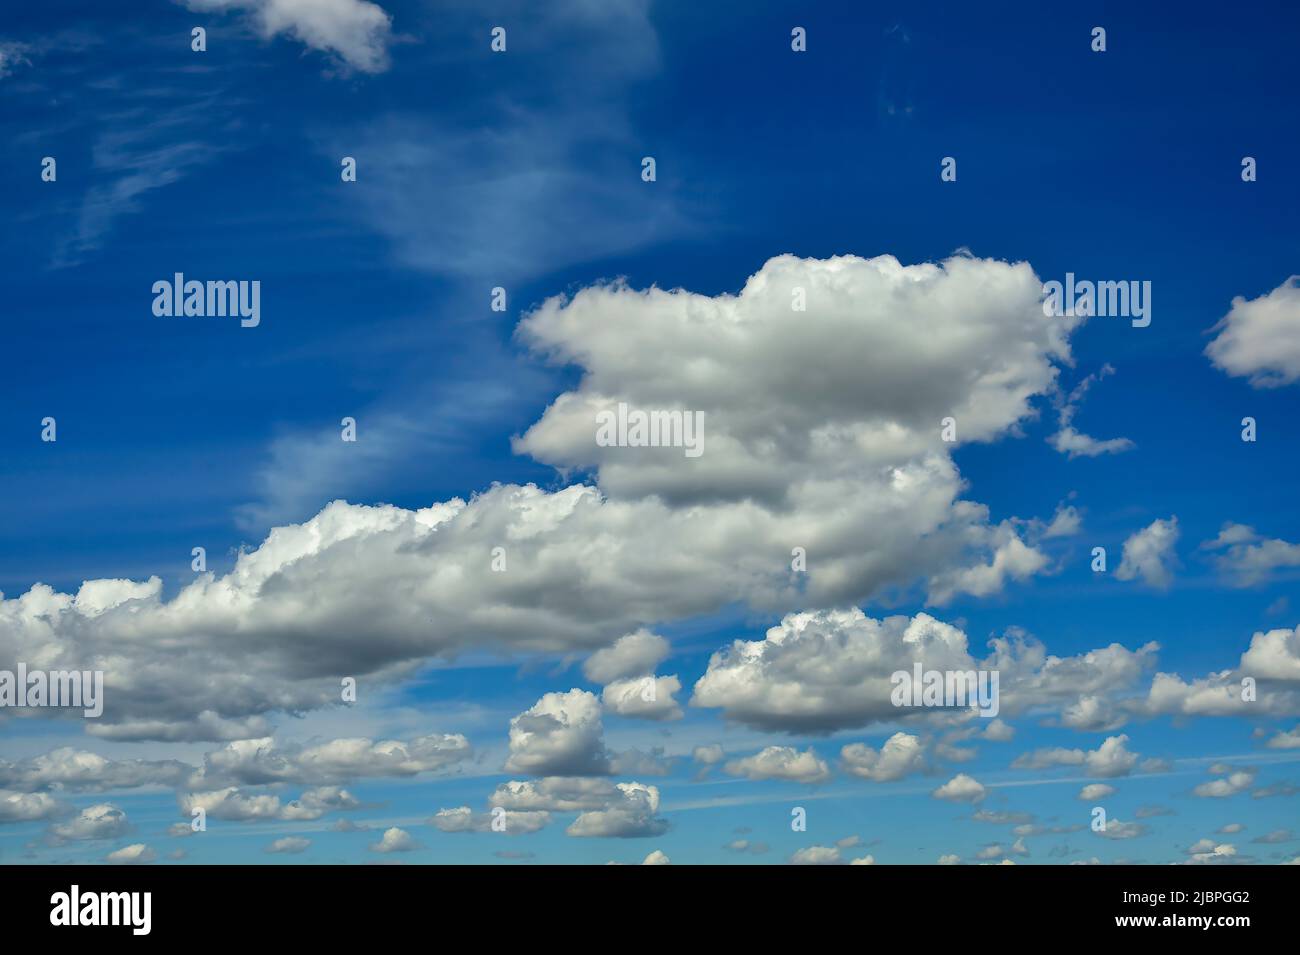 Nubes hinchadas blancas flotando a través de un cielo azul en la zona rural de Alberta, Canadá Foto de stock